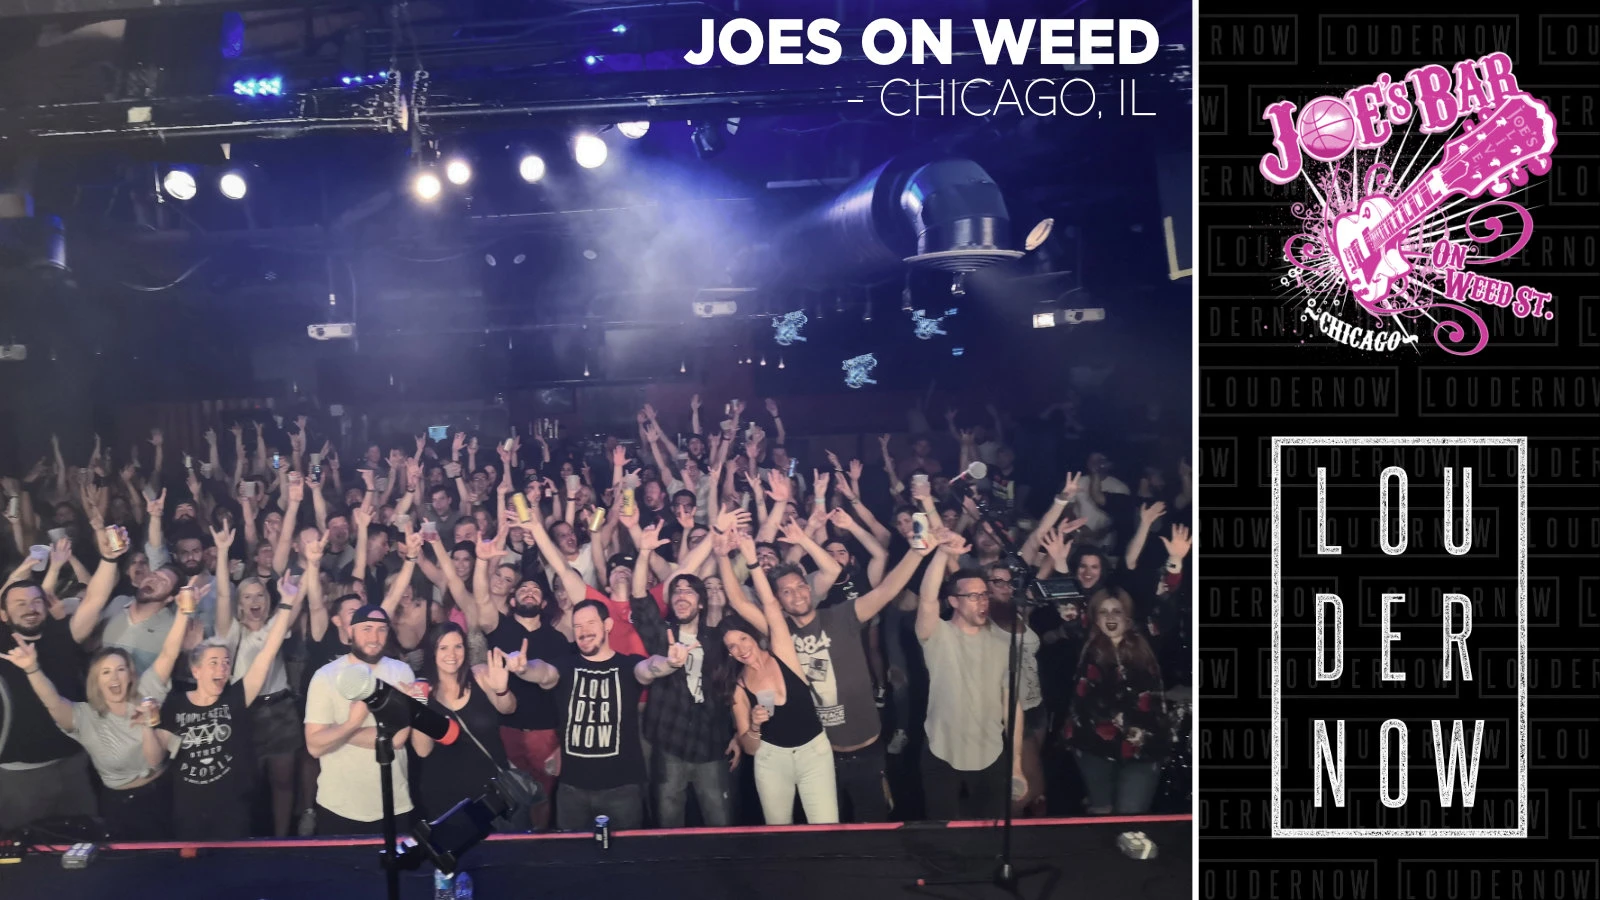 237-crowd-slide-show---joes-on-weed-17053759234161.jpg